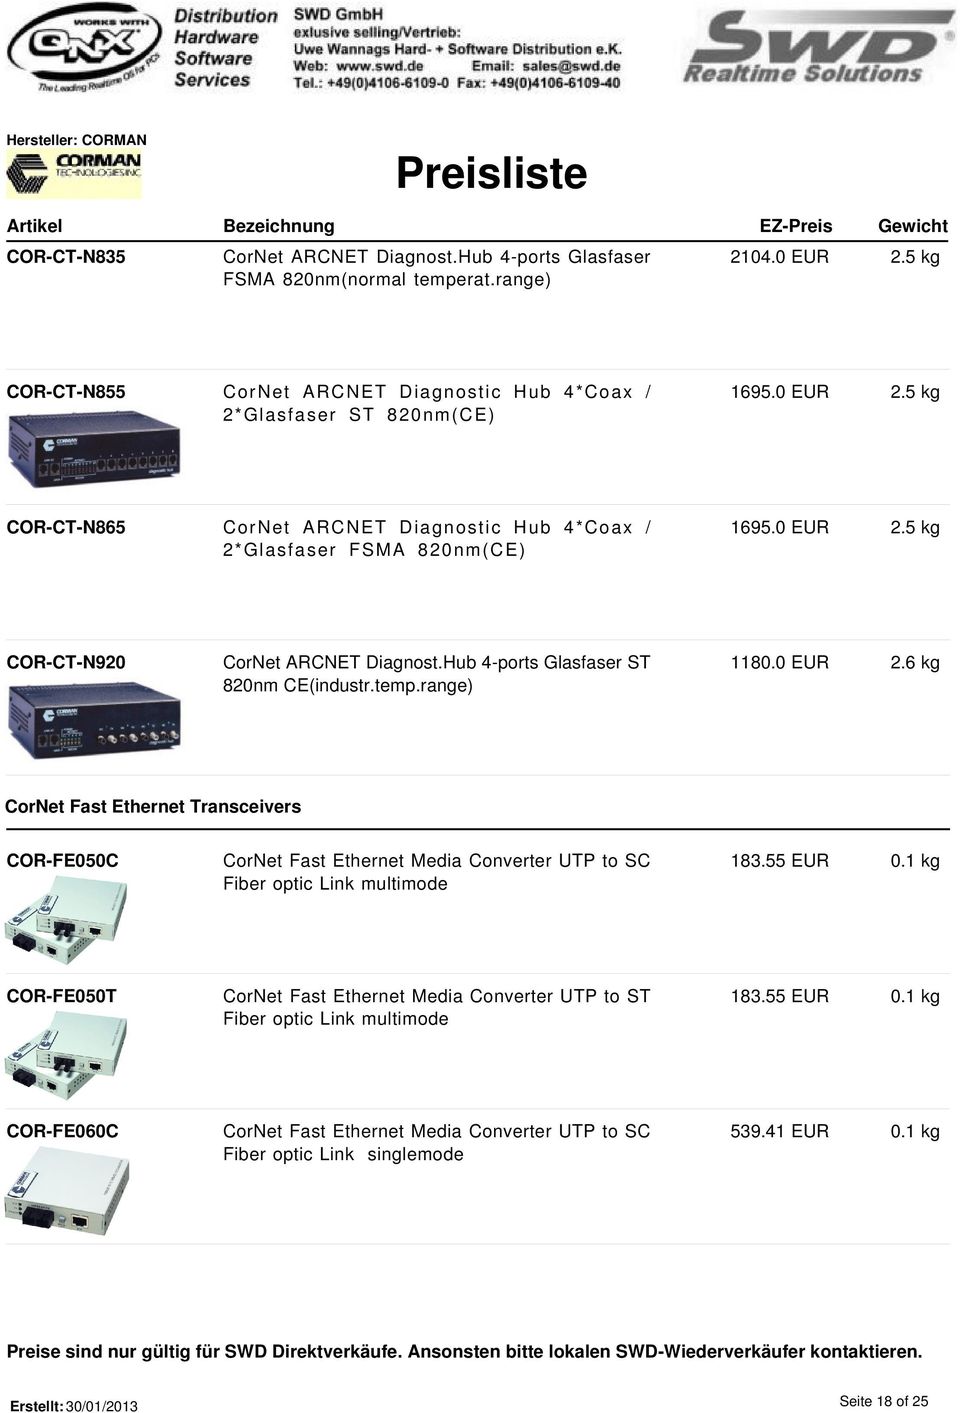 range) 1180.0 EUR 2.6 kg CorNet Fast Ethernet Transceivers COR-FE050C CorNet Fast Ethernet Media Converter UTP to SC Fiber optic Link multimode 183.55 EUR 0.